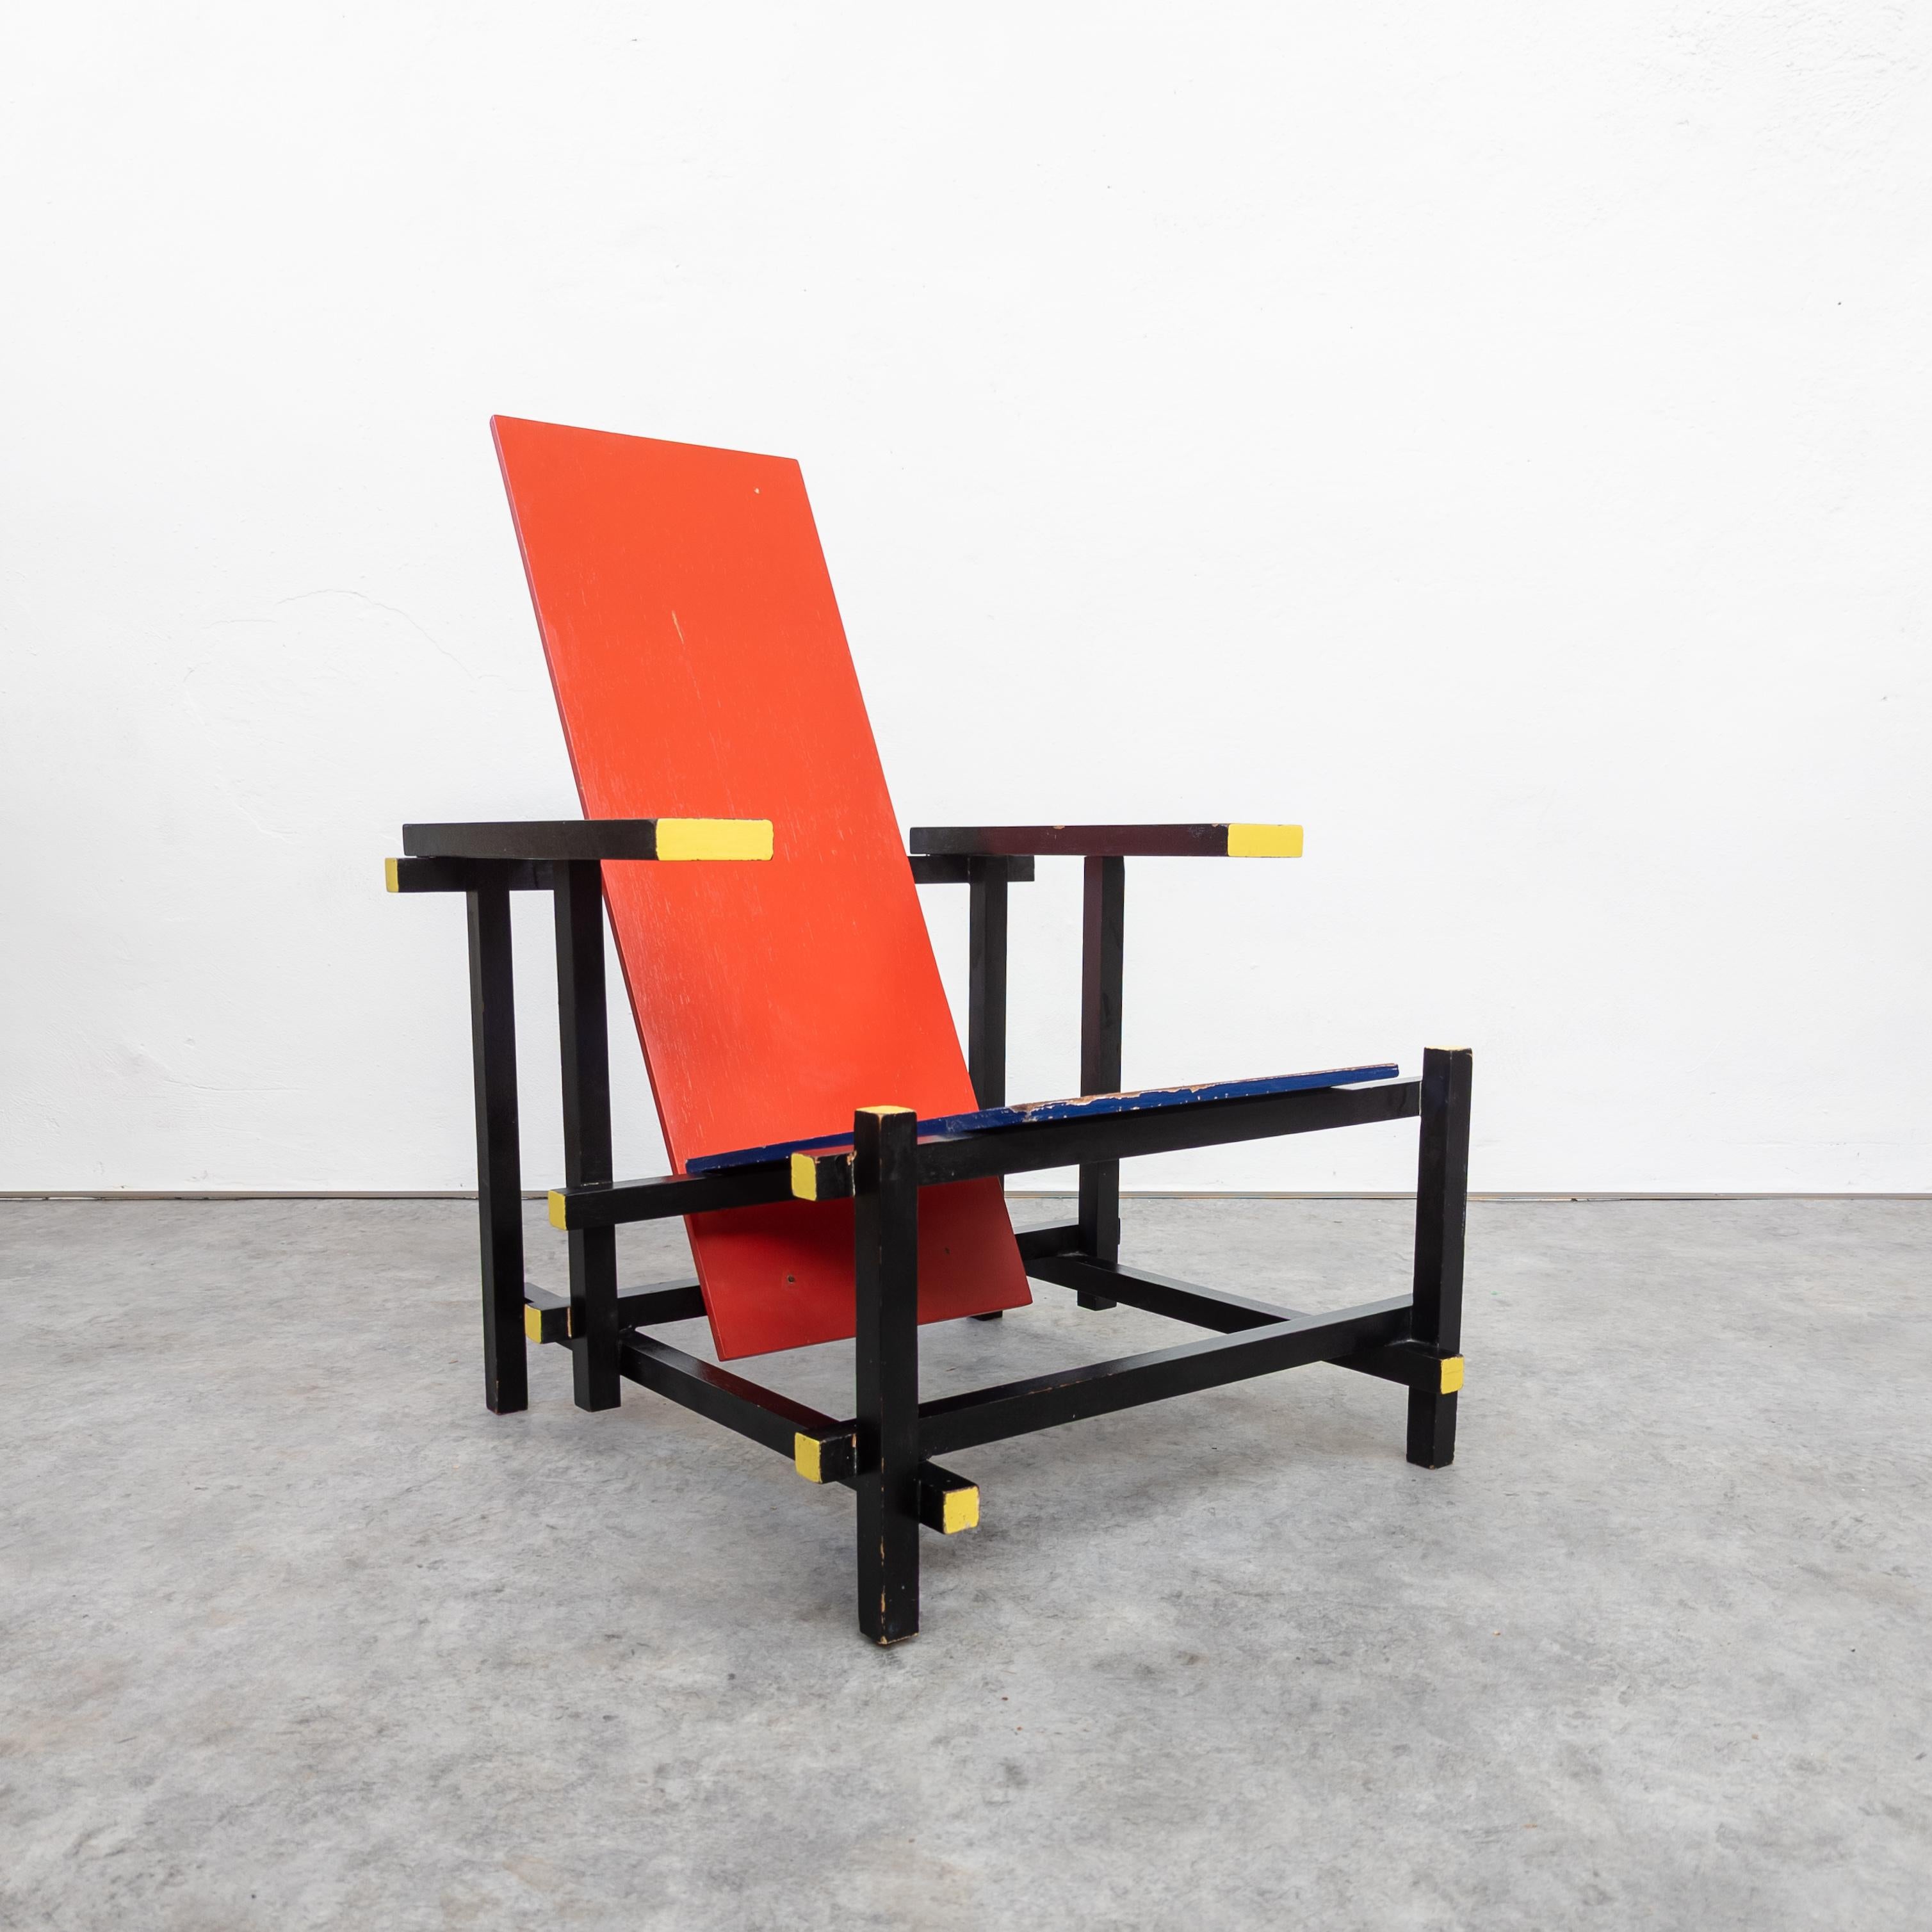 Der ikonische Stuhl wurde zwischen 1918 und 1923 vom niederländischen Künstler Gerrit Rietveld entworfen. Dieses besondere Stück stammt aus den frühen 1970er Jahren. Der Hersteller ist nicht bekannt, aber alle Verbindungen und die gesamte